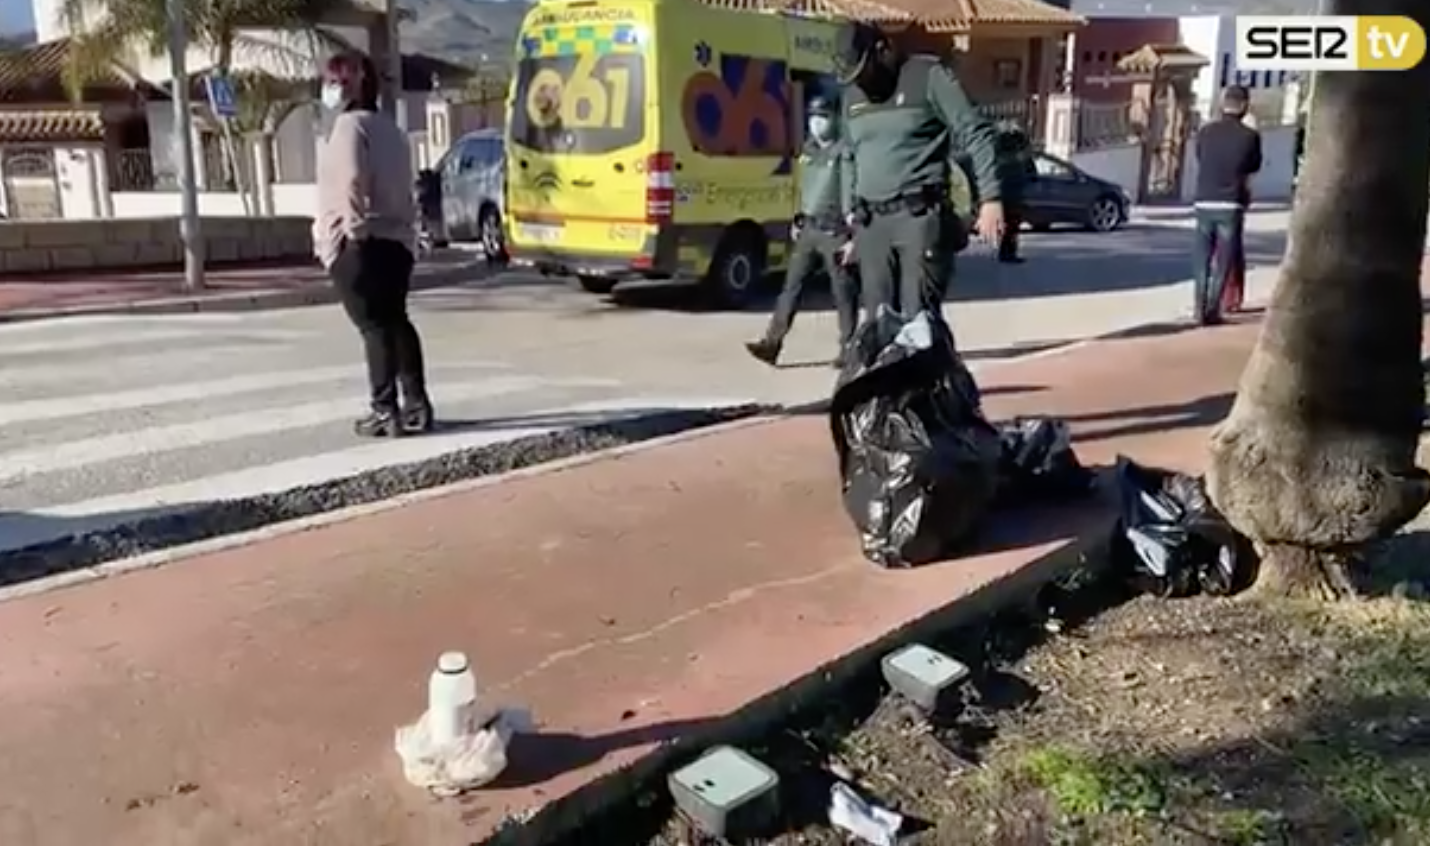 La Guardia Civil y Emergencias, en el escenario del ataque, con el bote de ácido en el suelo. Imagen: SER TV